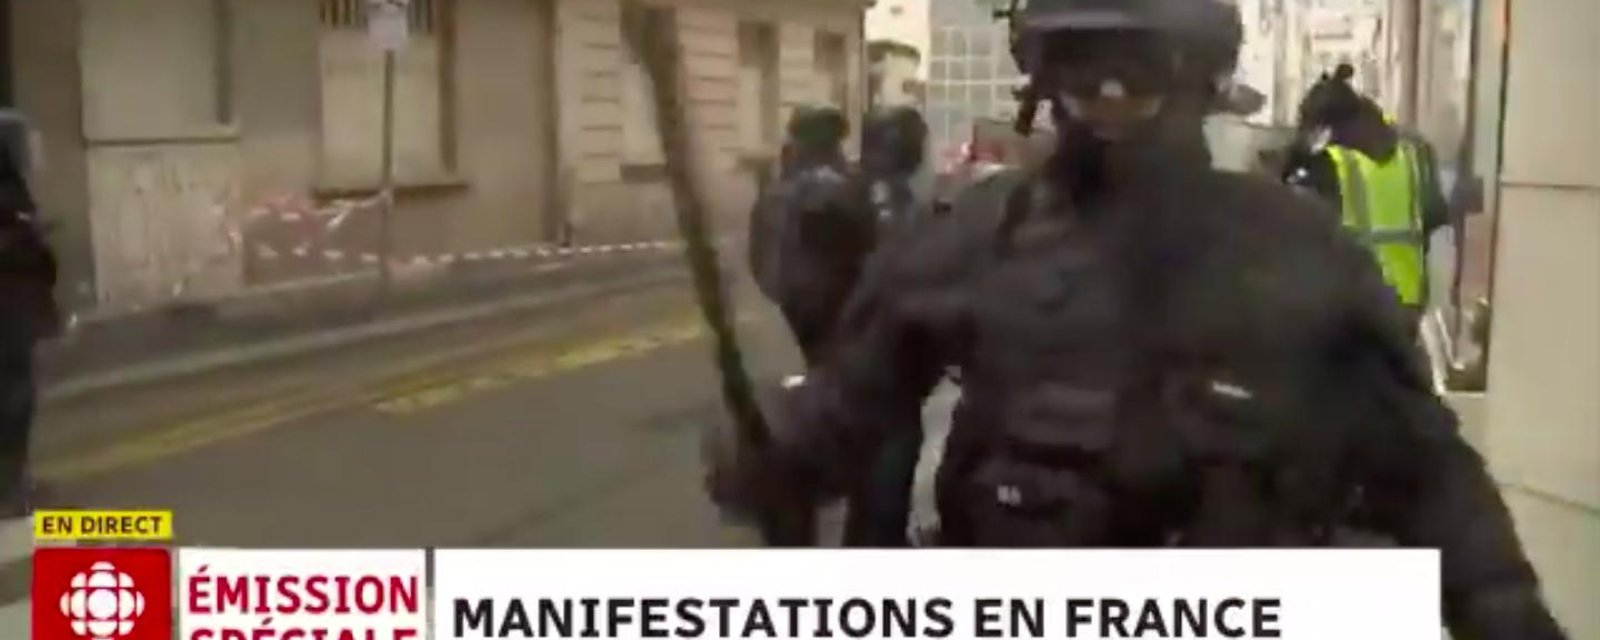 DERNIÈRE HEURE: Un journaliste de Radio-Canada brutalisé en direct par des policiers à Paris